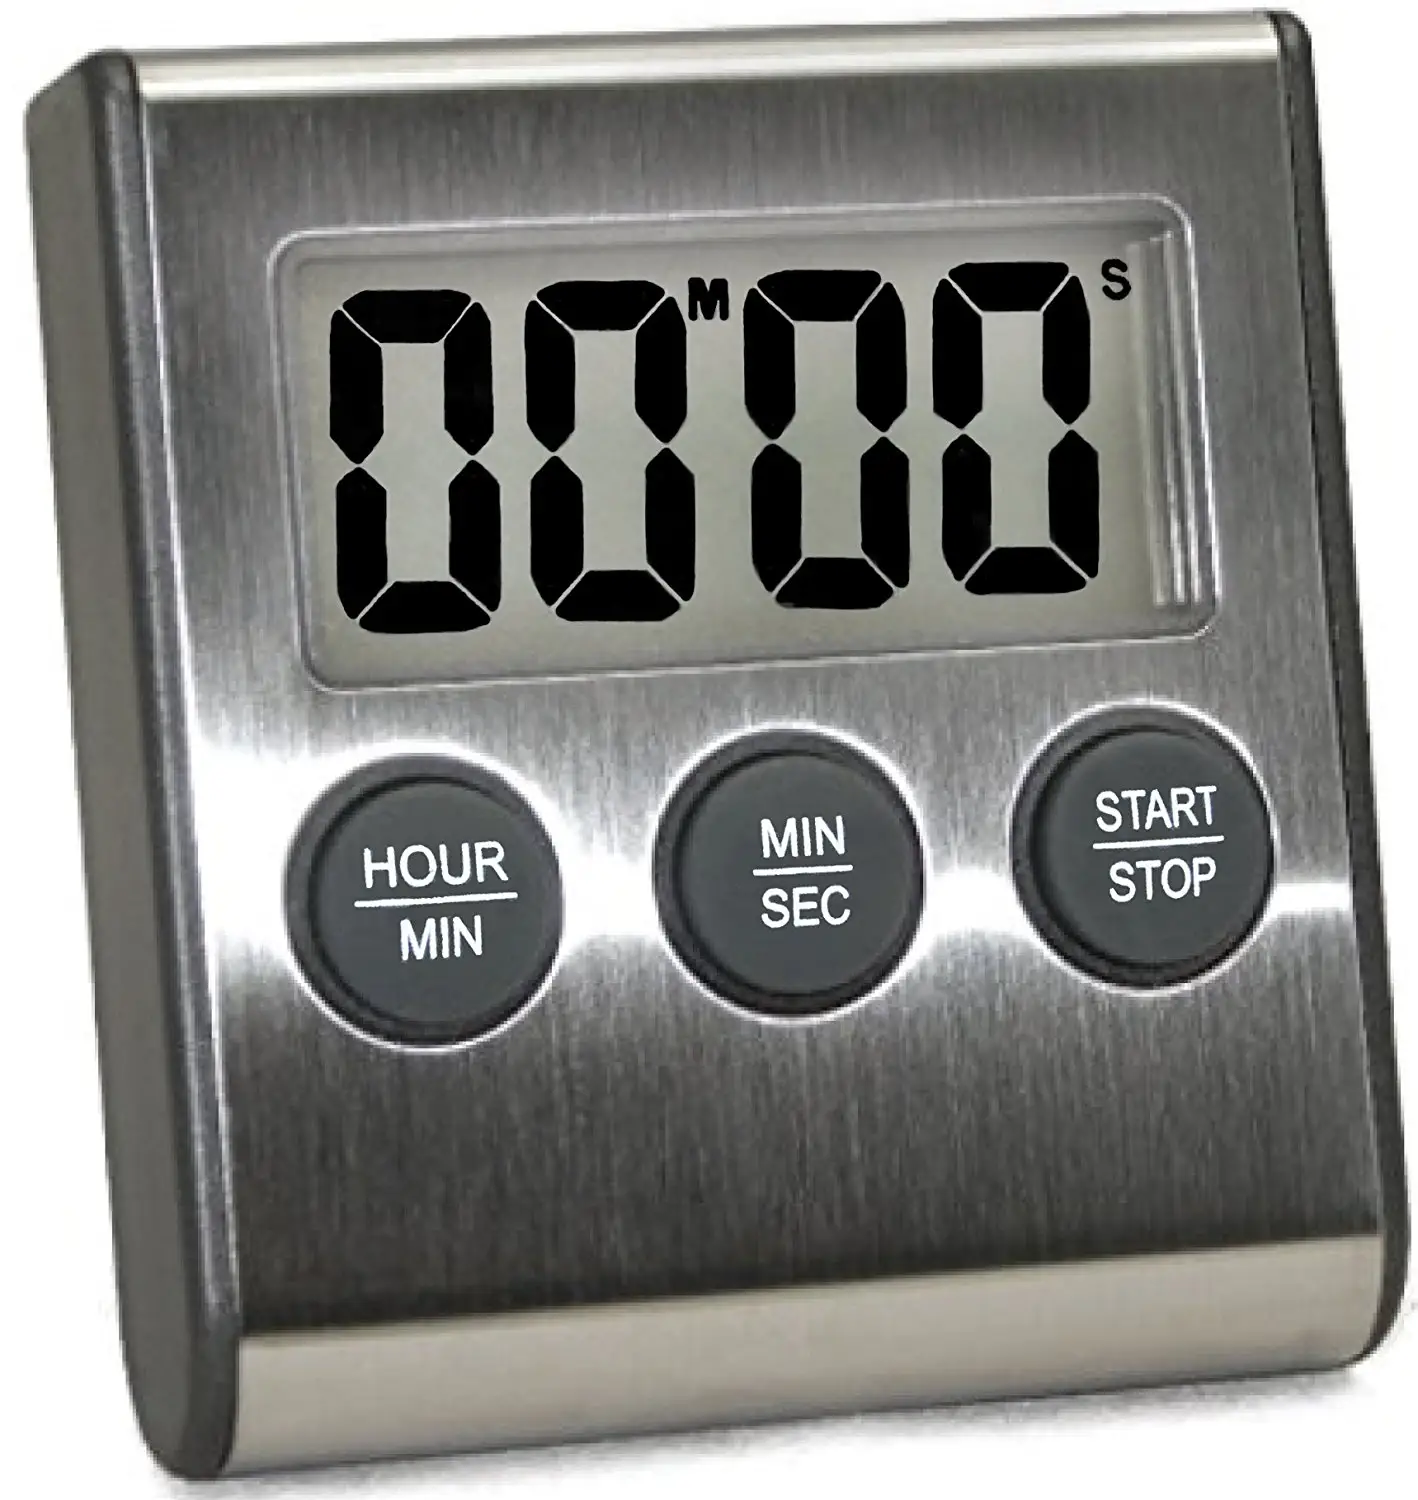 Minuteur de cuisine automatique 99 minutes, forme carrée, automatique, minuterie annulaire numérique, pour comptage à rebours